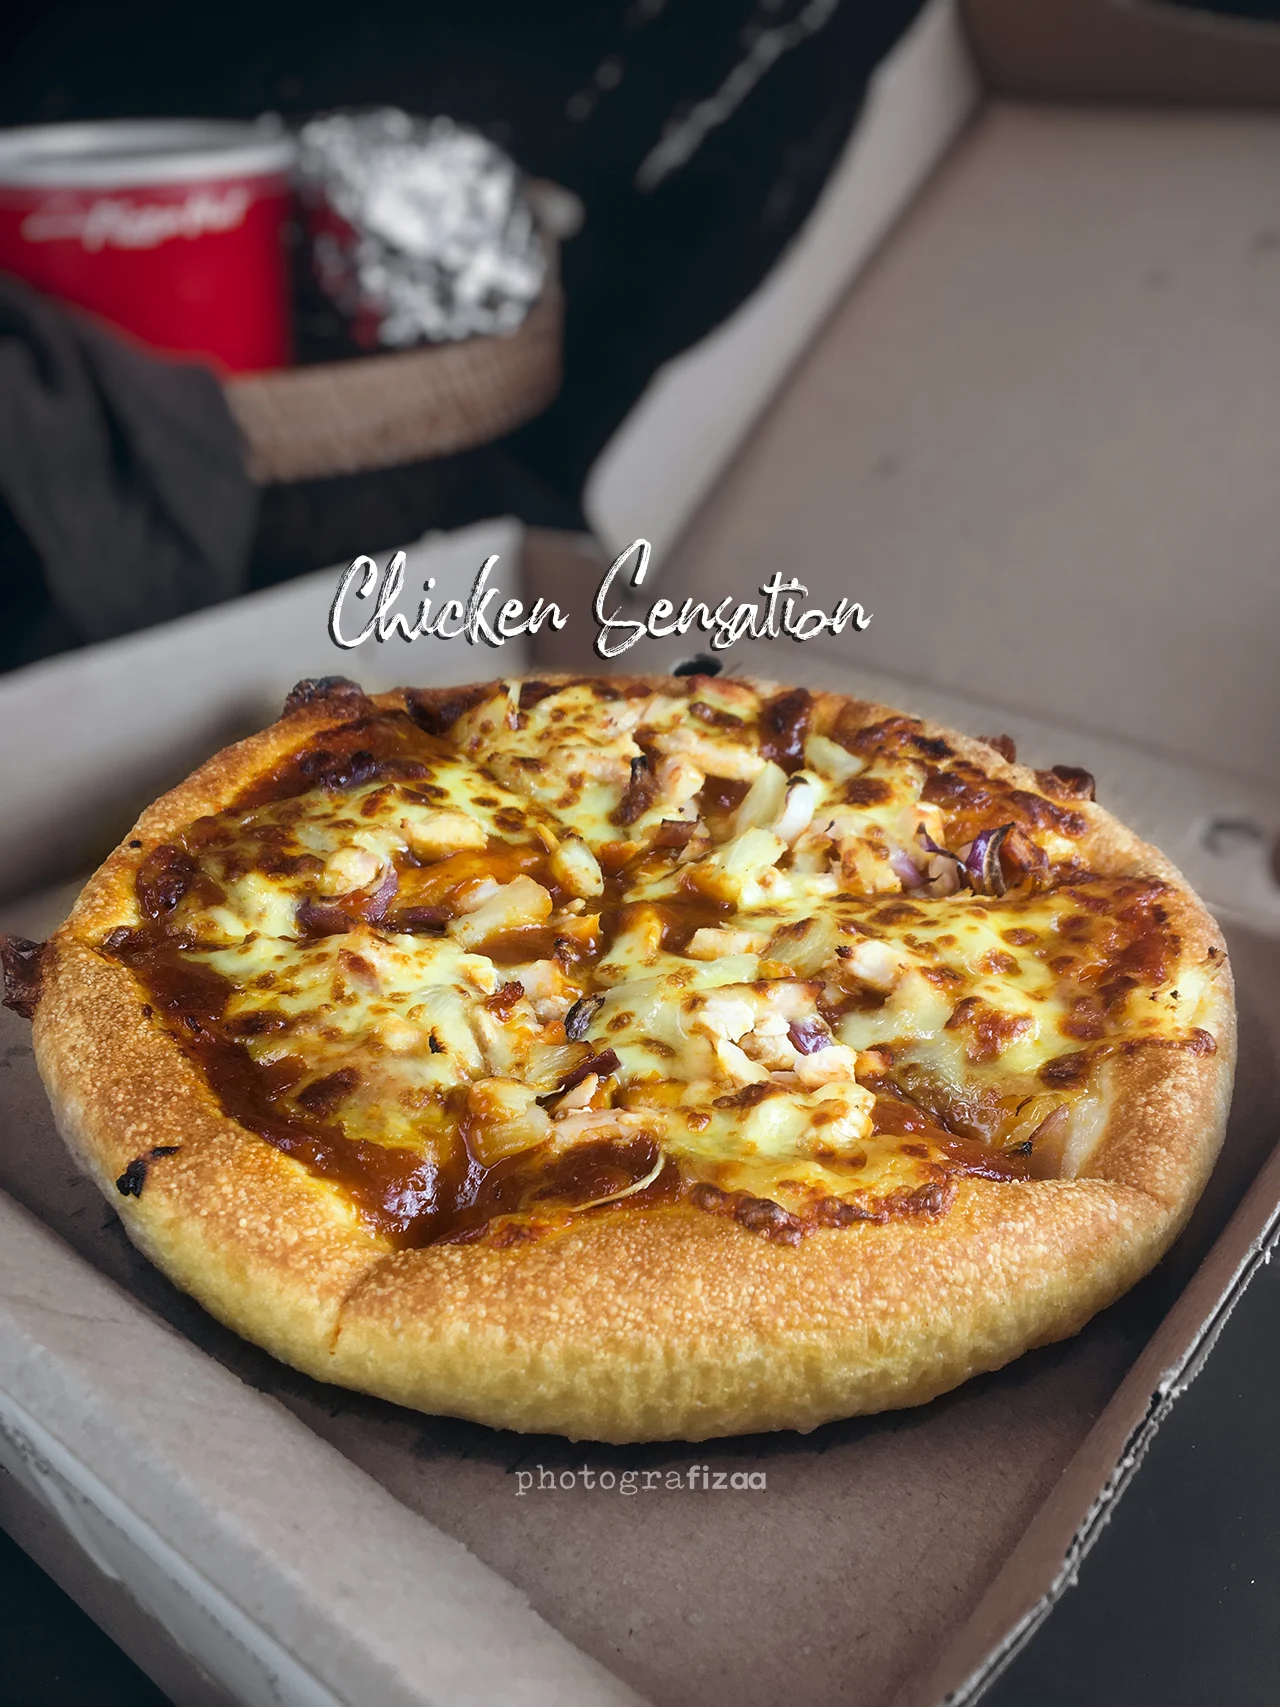 Chicken Sensation Pizza Hut